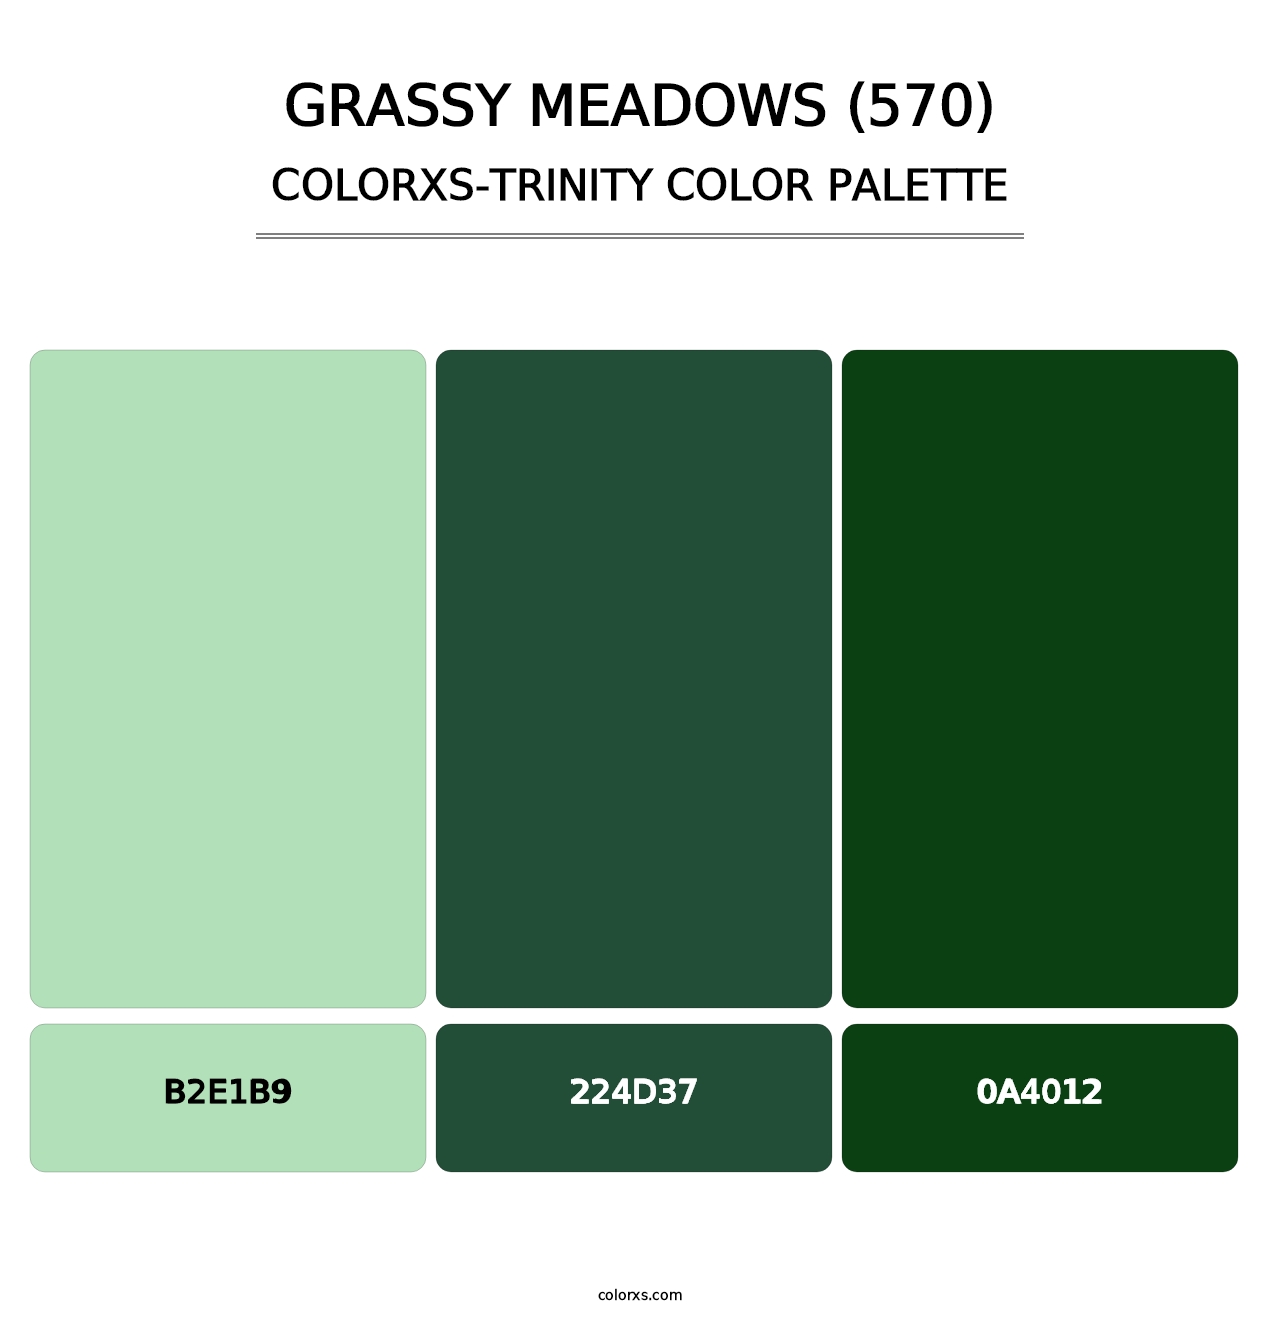 Grassy Meadows (570) - Colorxs Trinity Palette